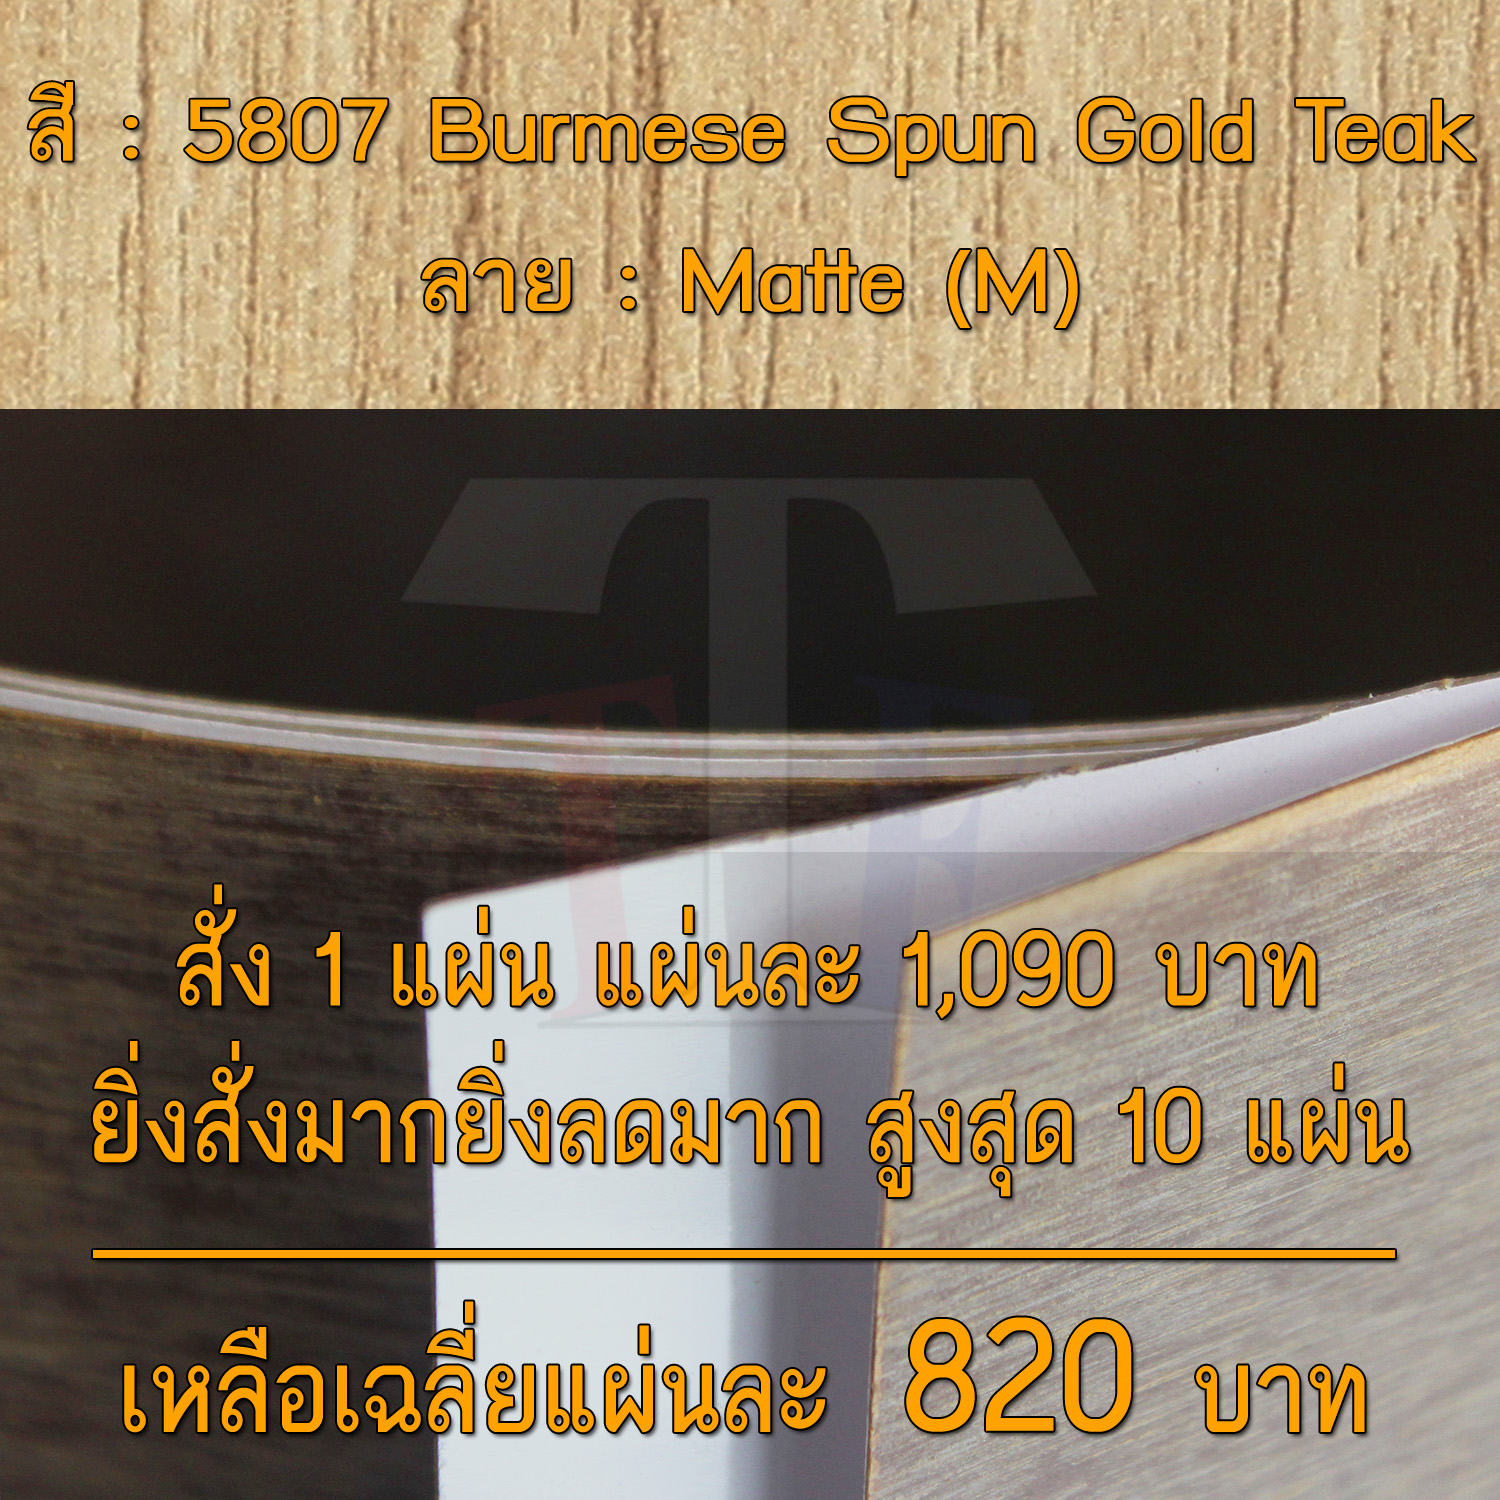 แผ่นโฟเมก้า แผ่นลามิเนต ยี่ห้อ TD Board ลายไม้สัก รหัส 5807 Burmese Spun Gold Teak พื้นผิวลาย Matte (M) ขนาด 1220 x 2440 มม. หนา 0.70 มม. ใช้สำหรับงานตกแต่งภายใน งานปิดผิวเฟอร์นิเจอร์ ผนัง และอื่นๆ เพื่อเพิ่มความสวยงาม formica laminate 5807M